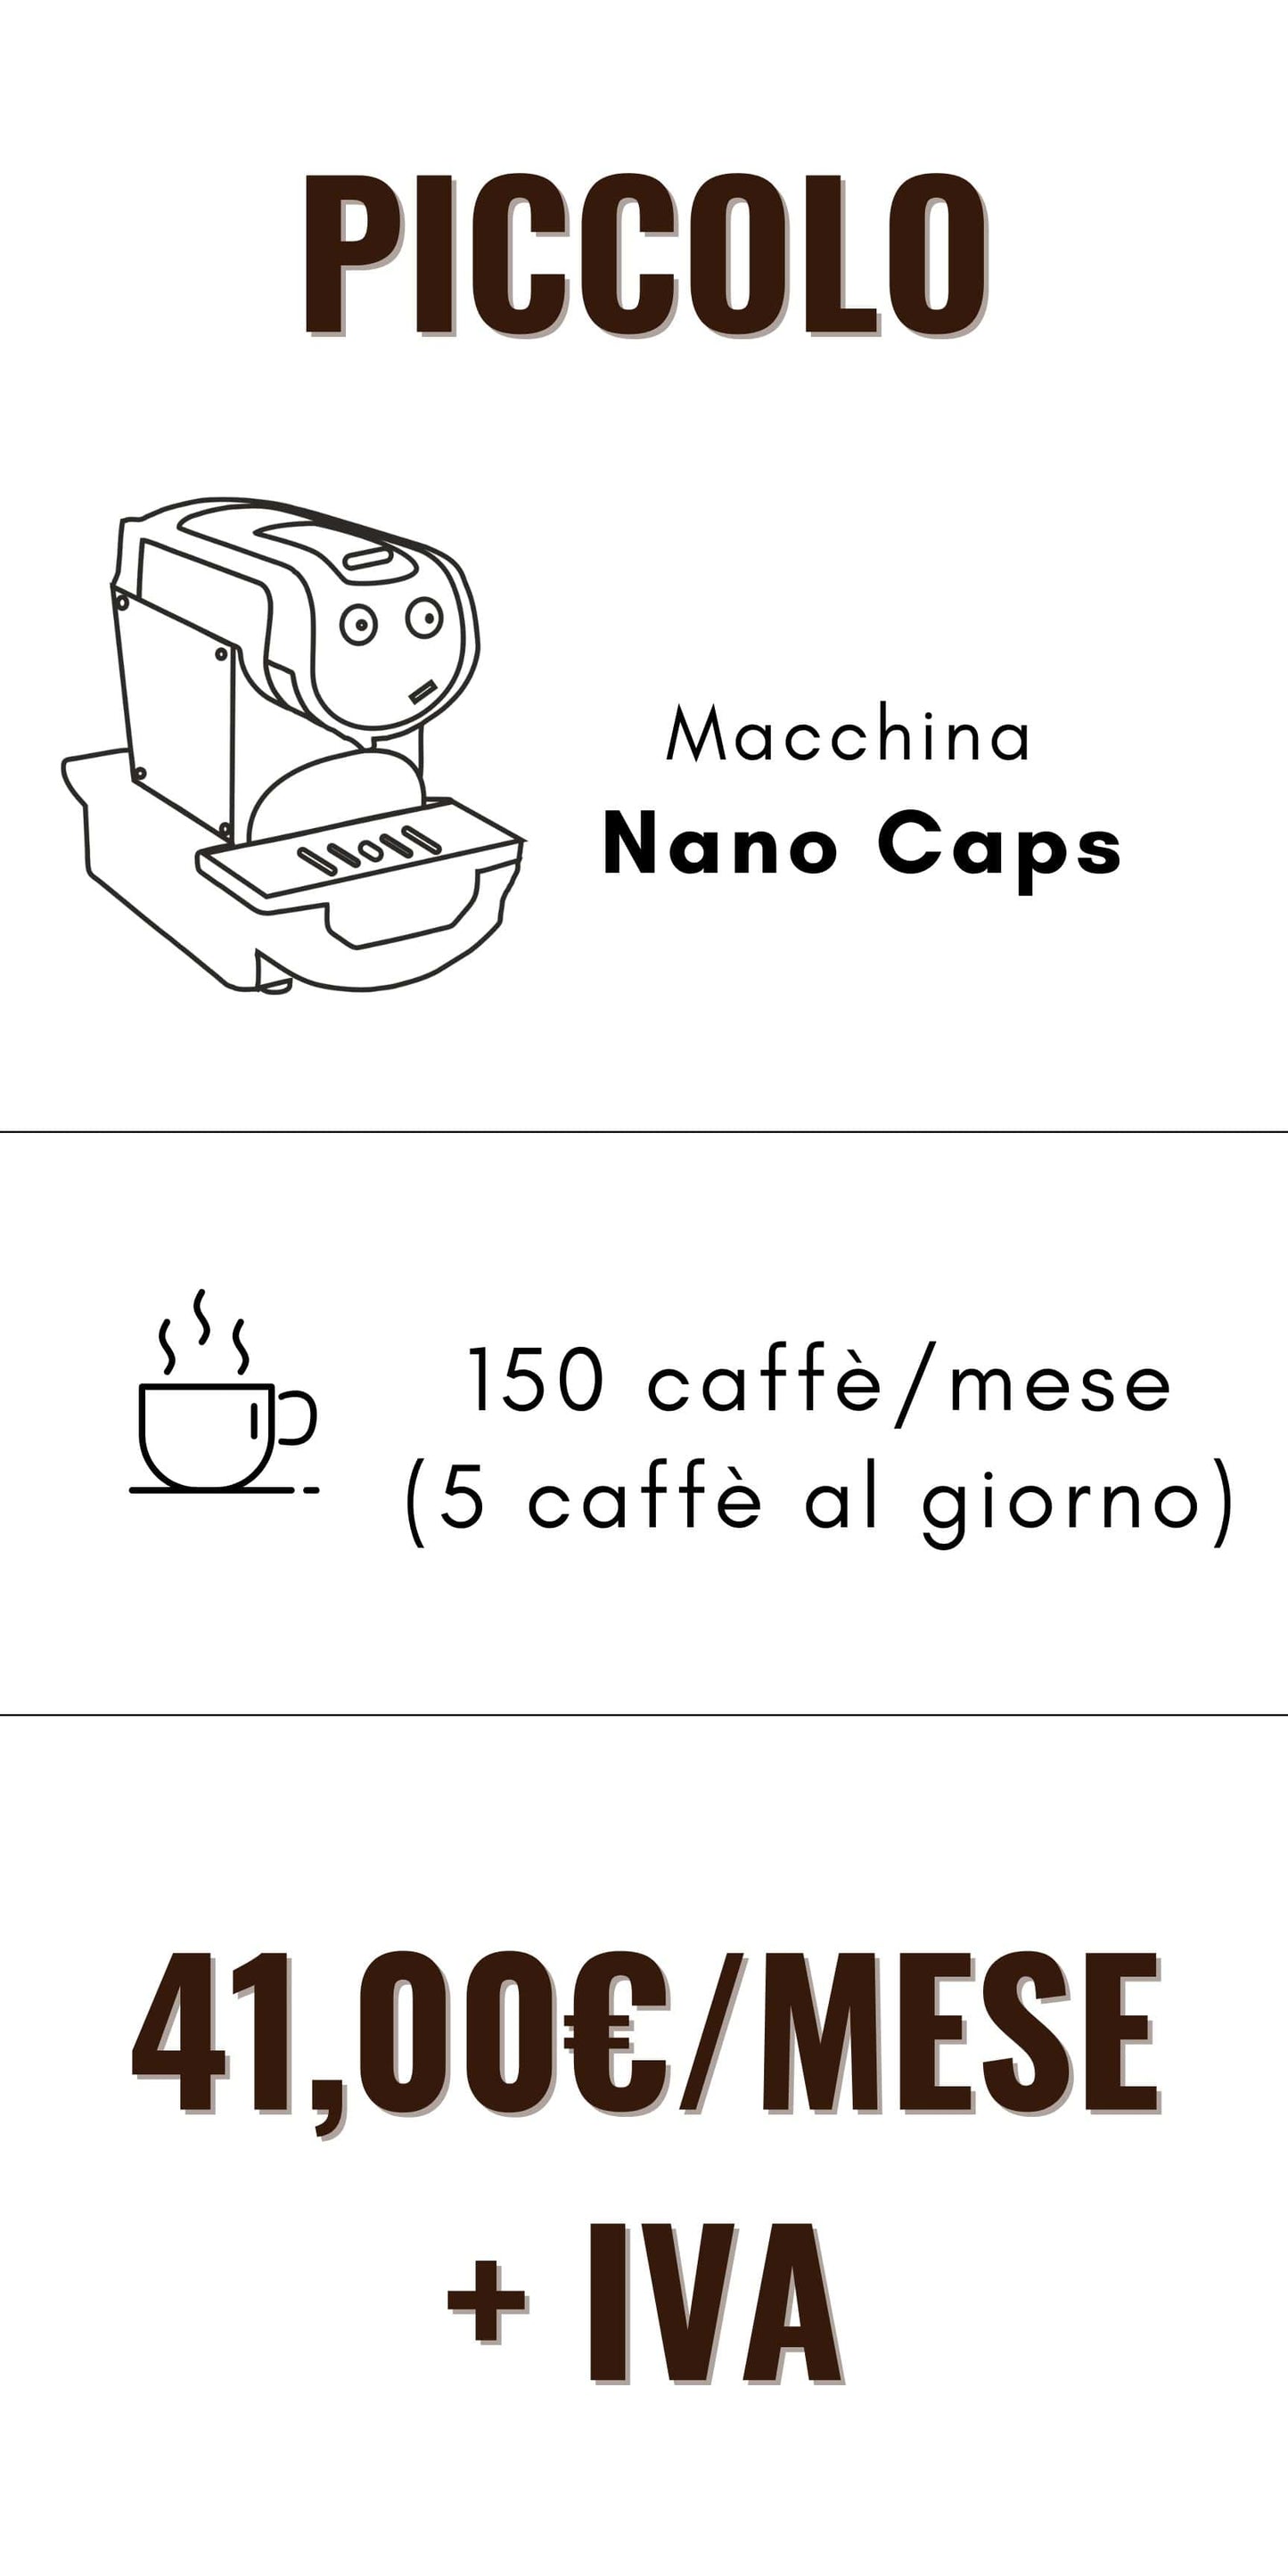 PICCOLO Nano Caps Business